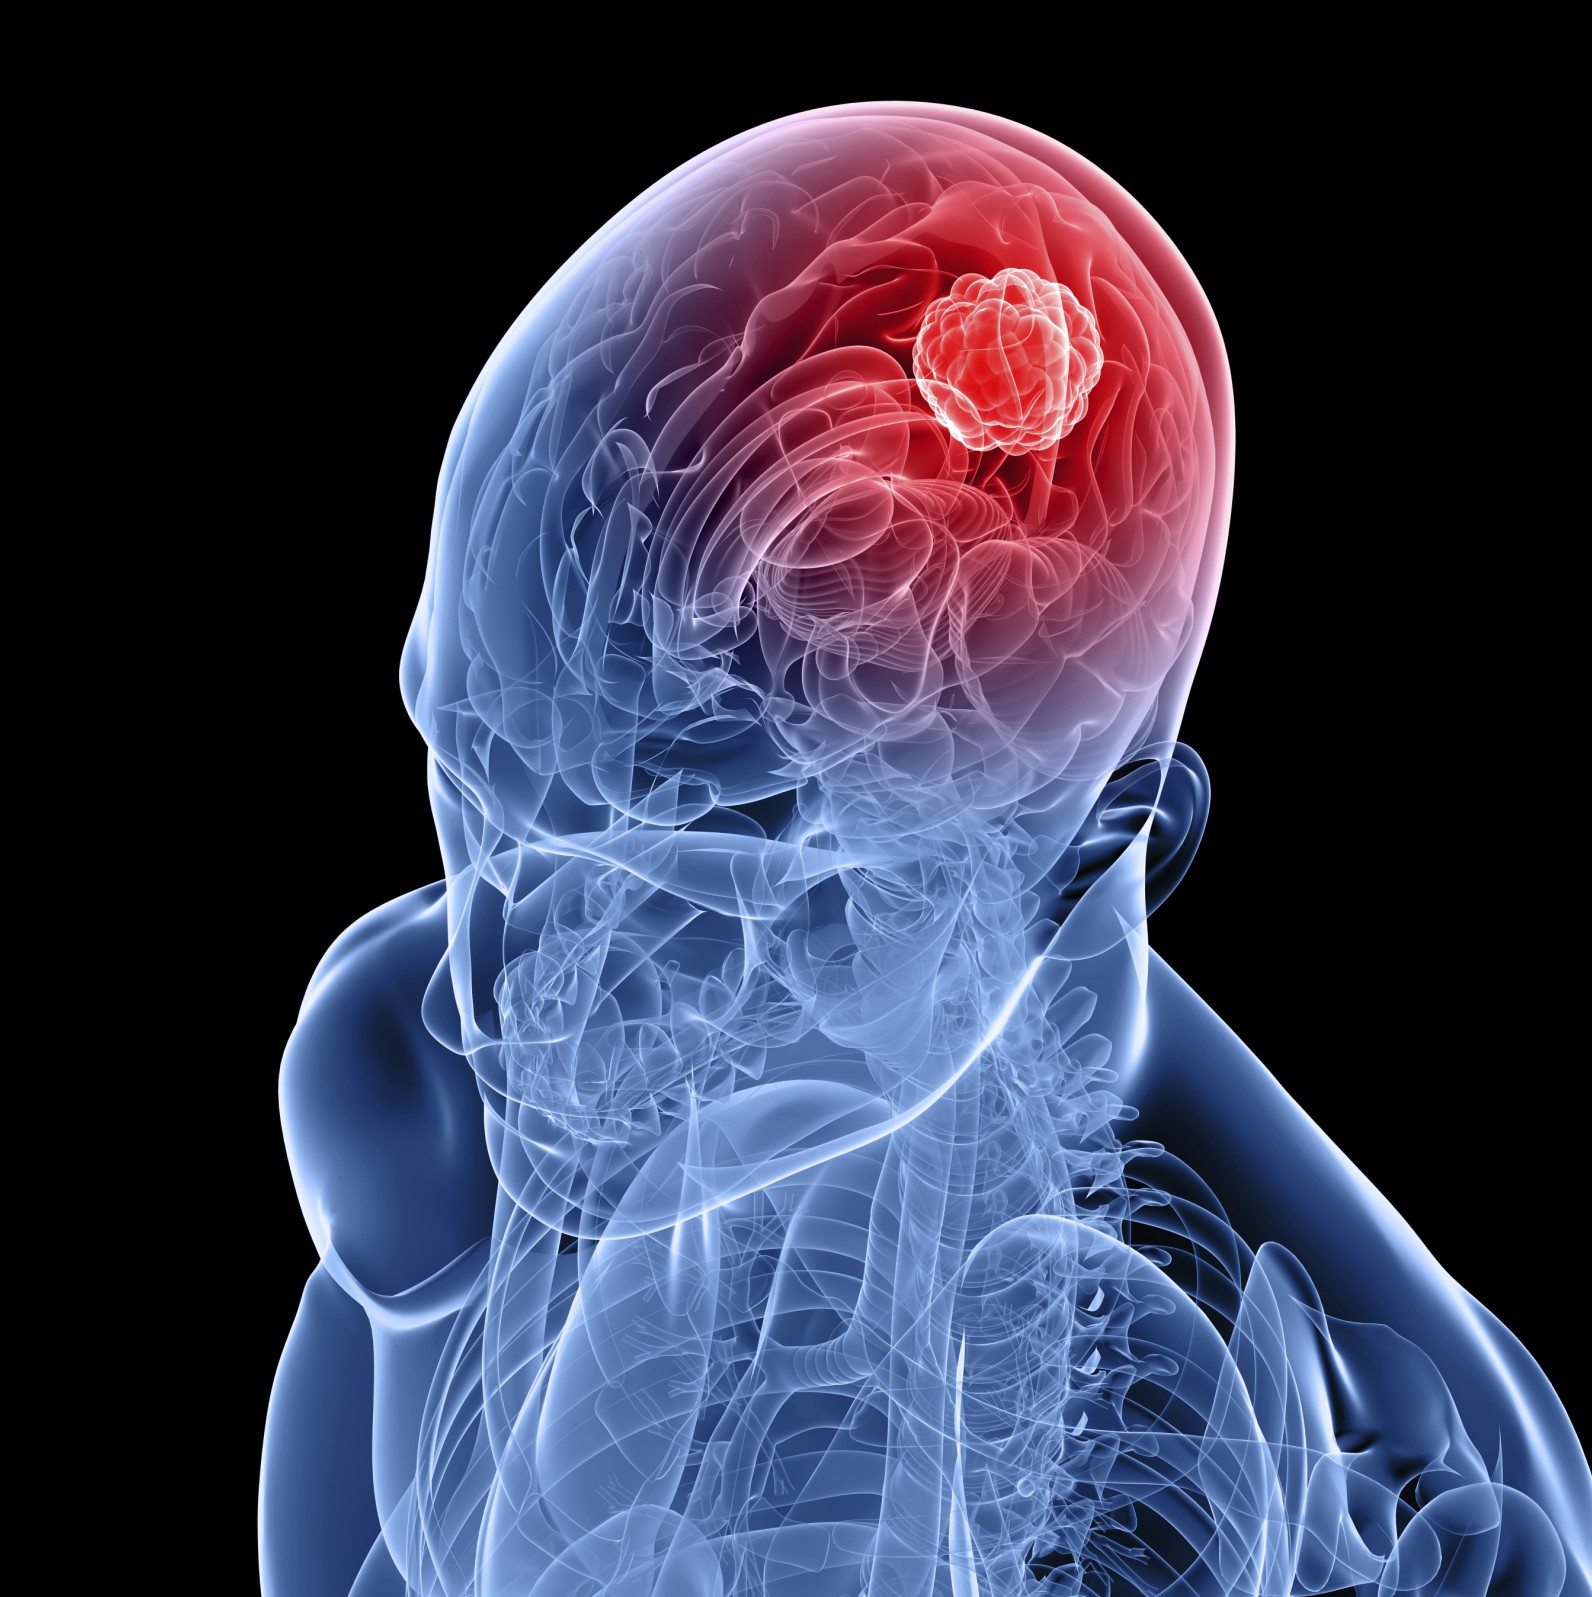 تومور مغزی | دکتر گیو شریفی